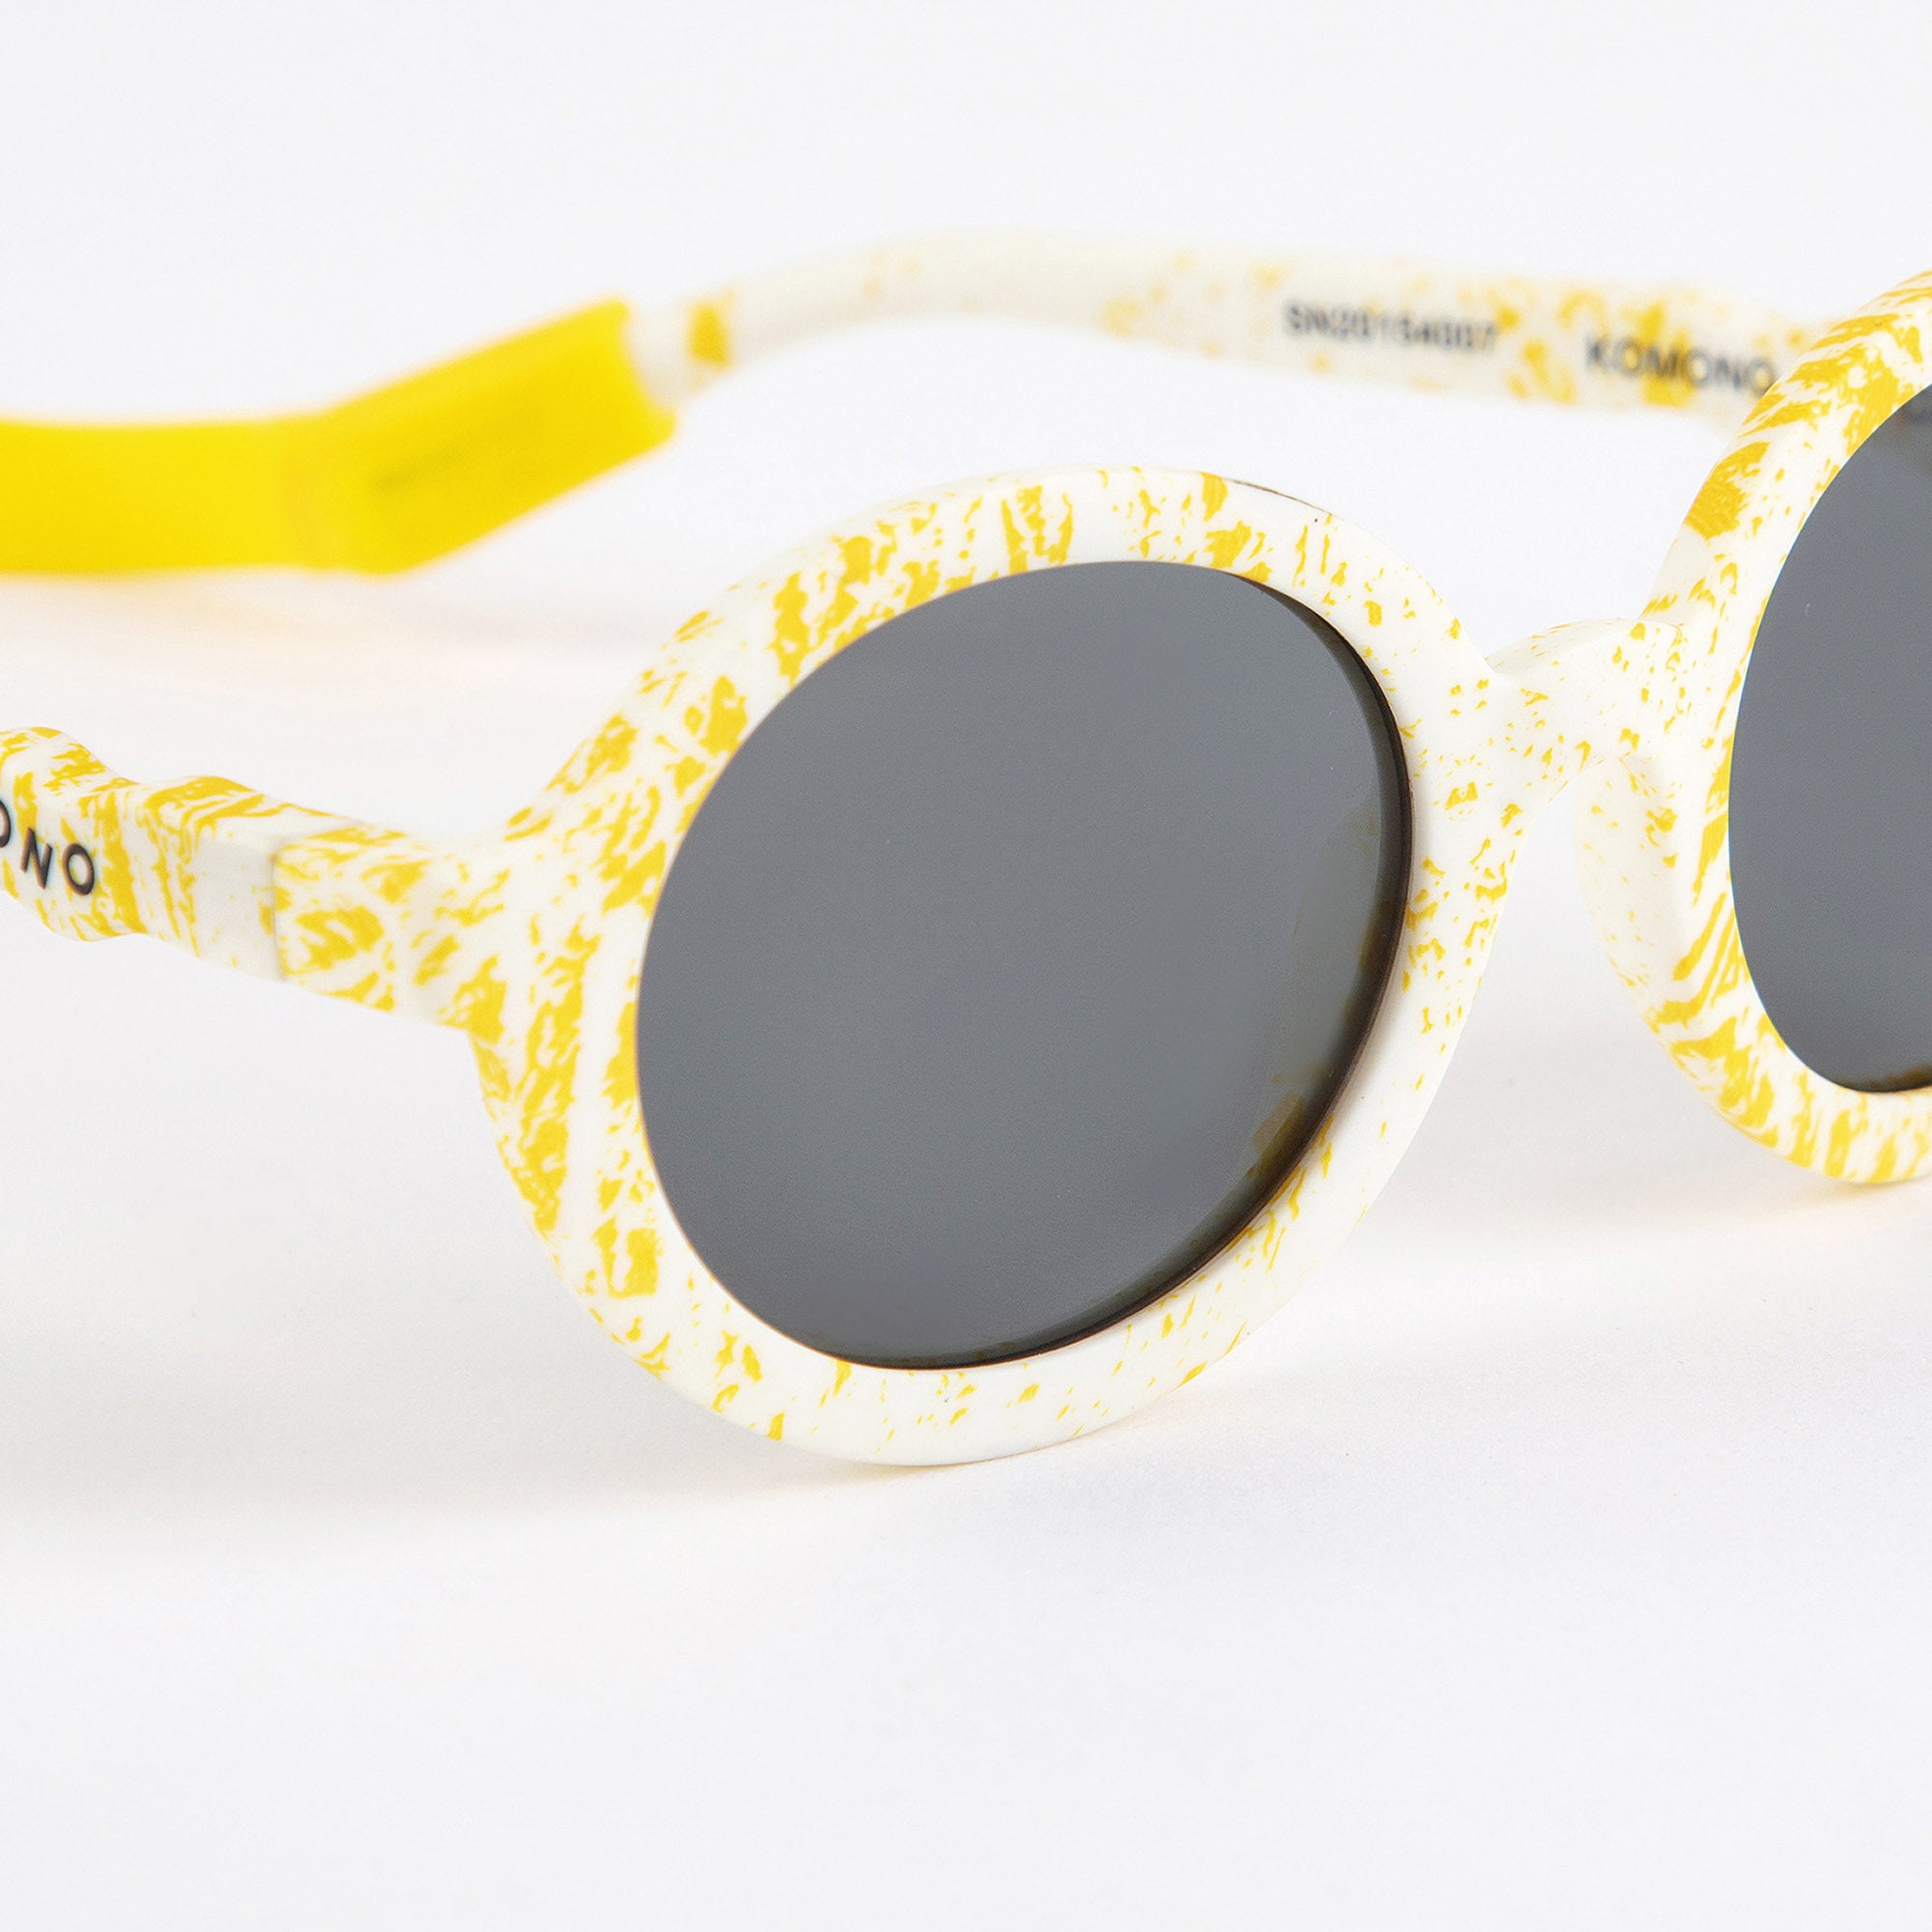 Boys & Girls Yellow Sunglasses